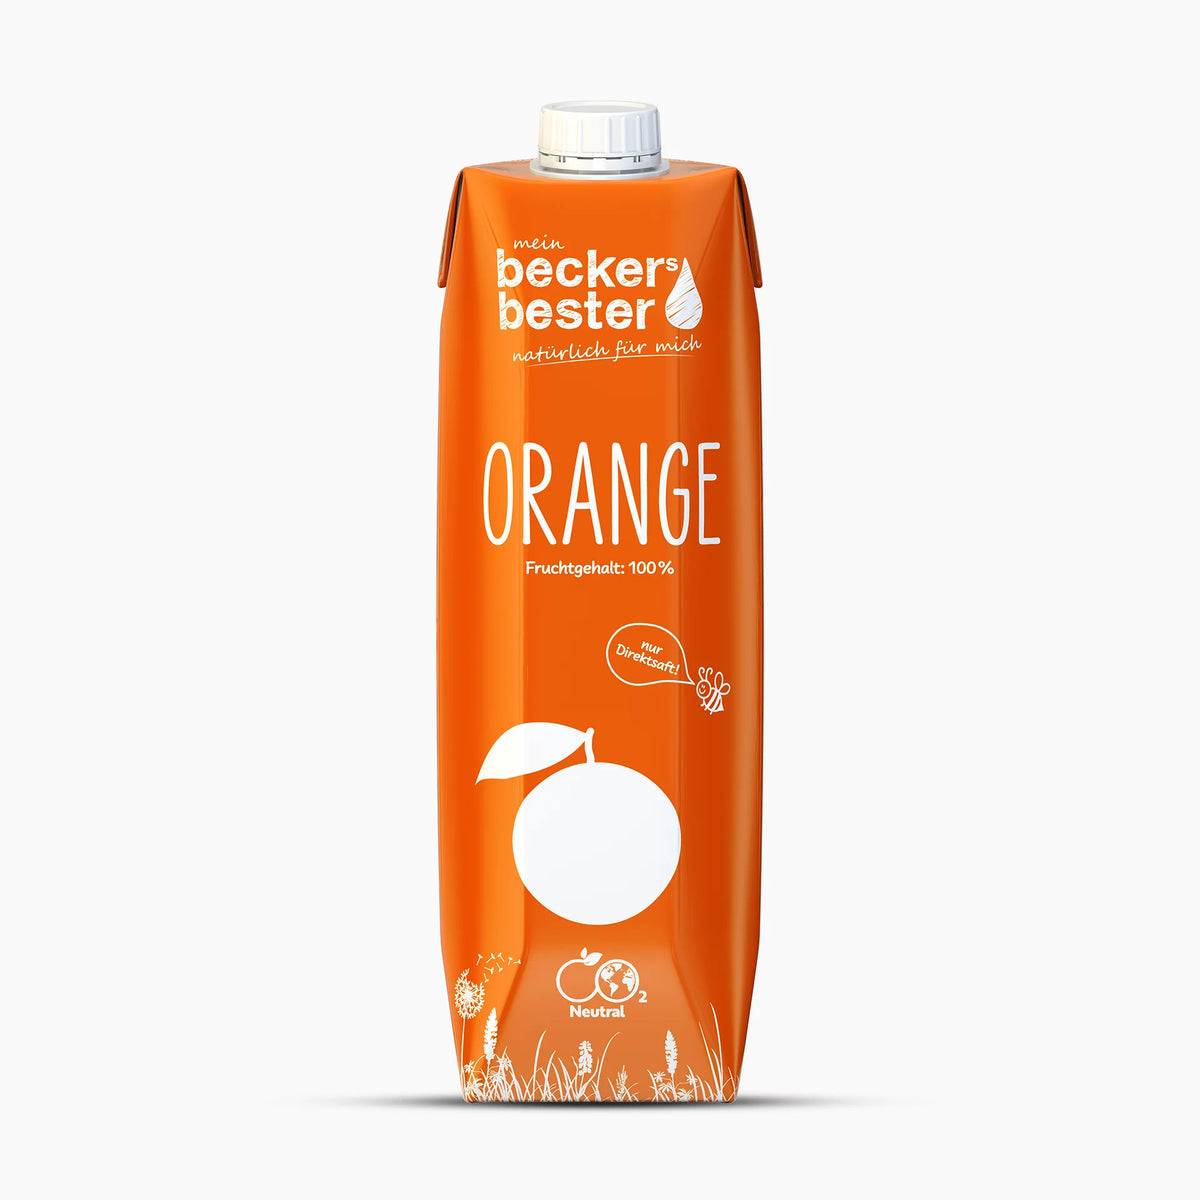 Becker's Bester Orange Juice, 100%, 1l